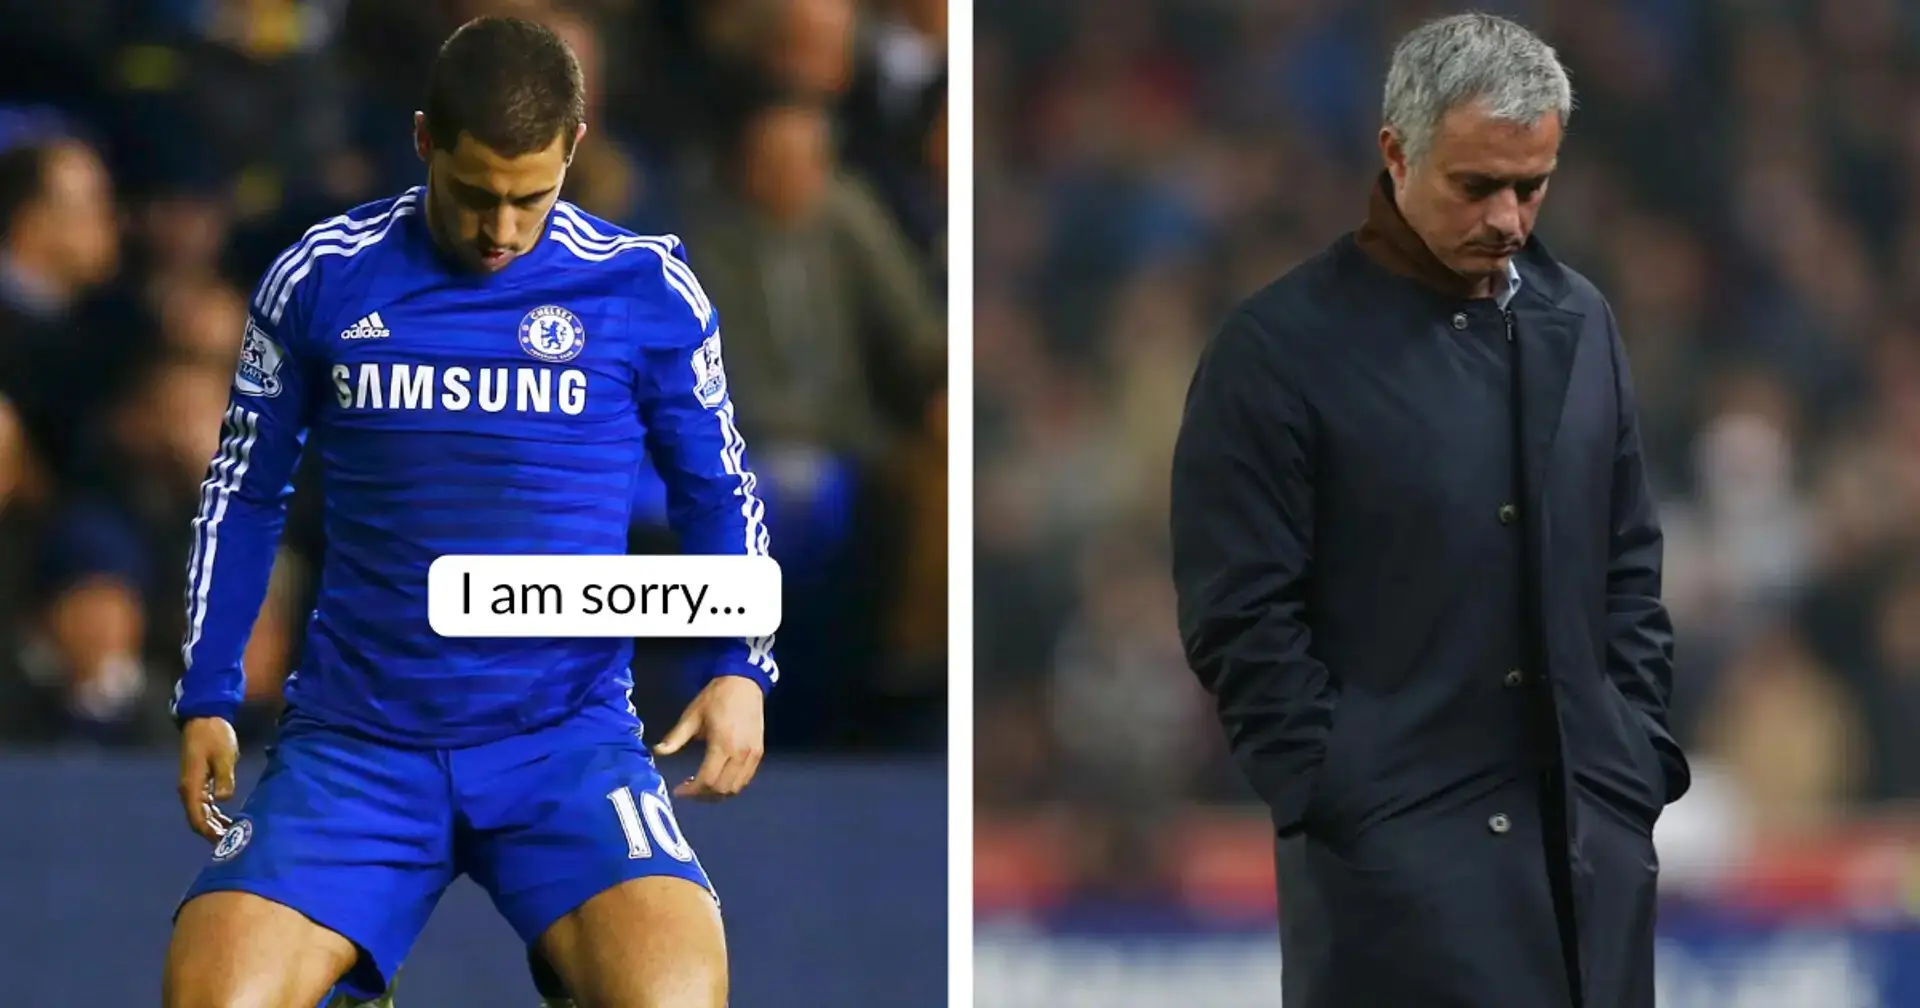 ✍️ "Ich habe ihm eine Nachricht geschickt, um zu sagen...": Ein Rückblick auf den Streit zwischen Hazard und Mourinho im Jahr 2015 aufgrund der Ergebnisse von Chelsea